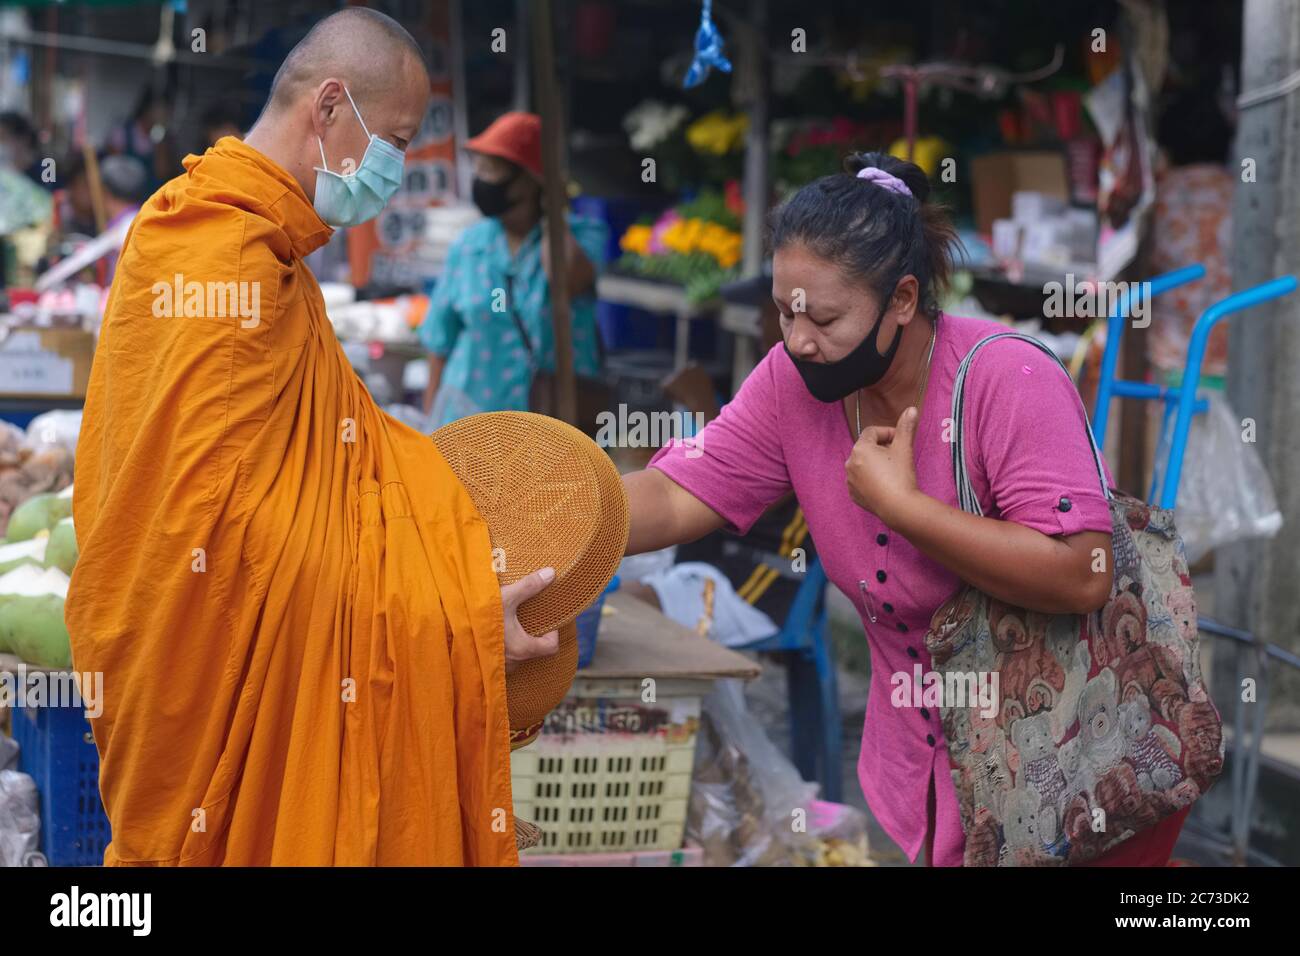 Ein buddhistischer Mönch auf seiner Morgenalmosenrunde (binta baat) und mit Almosenschale (baat) wird von einer Laienfrau, Phuket Thailand, Almosen gegeben Stockfoto